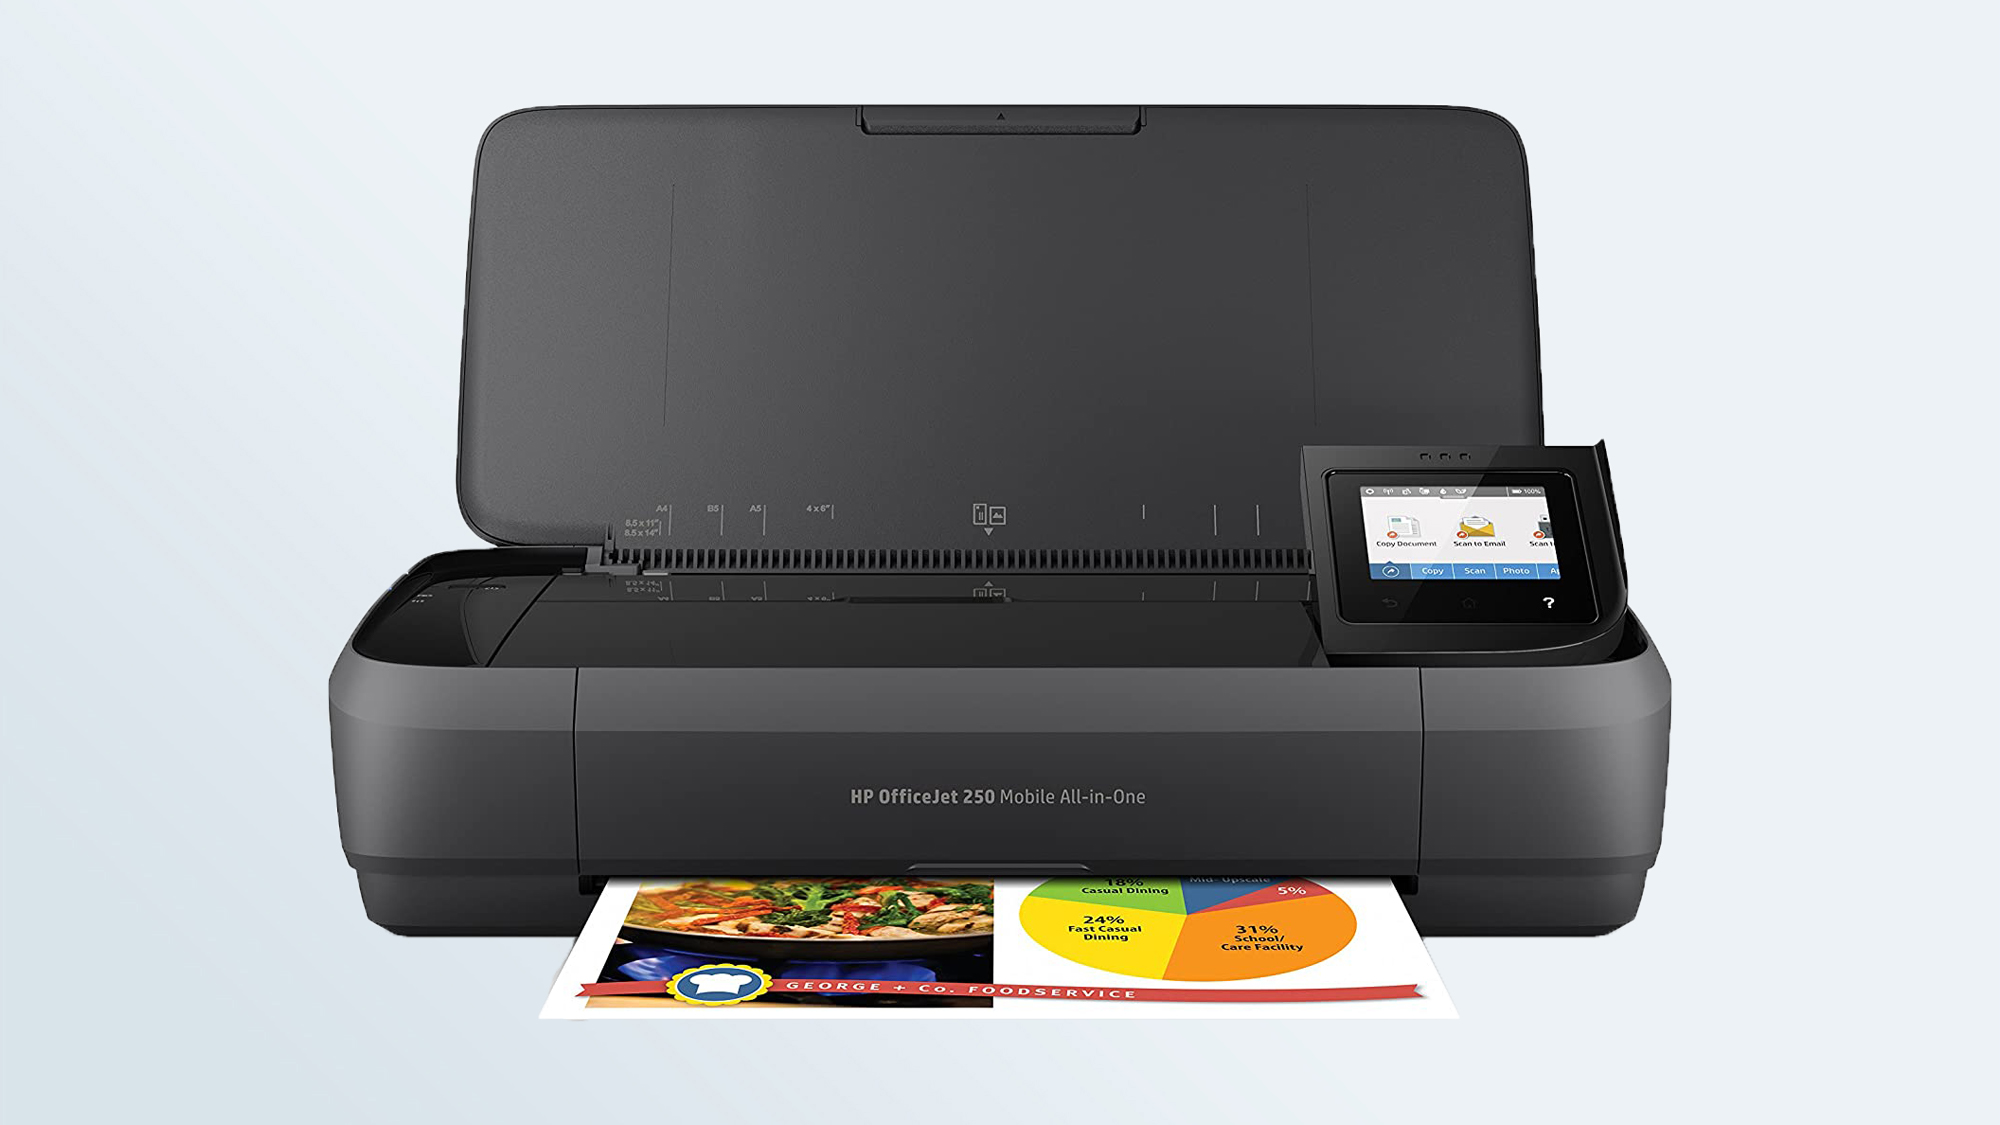 Best printers: HP OfficeJet 250